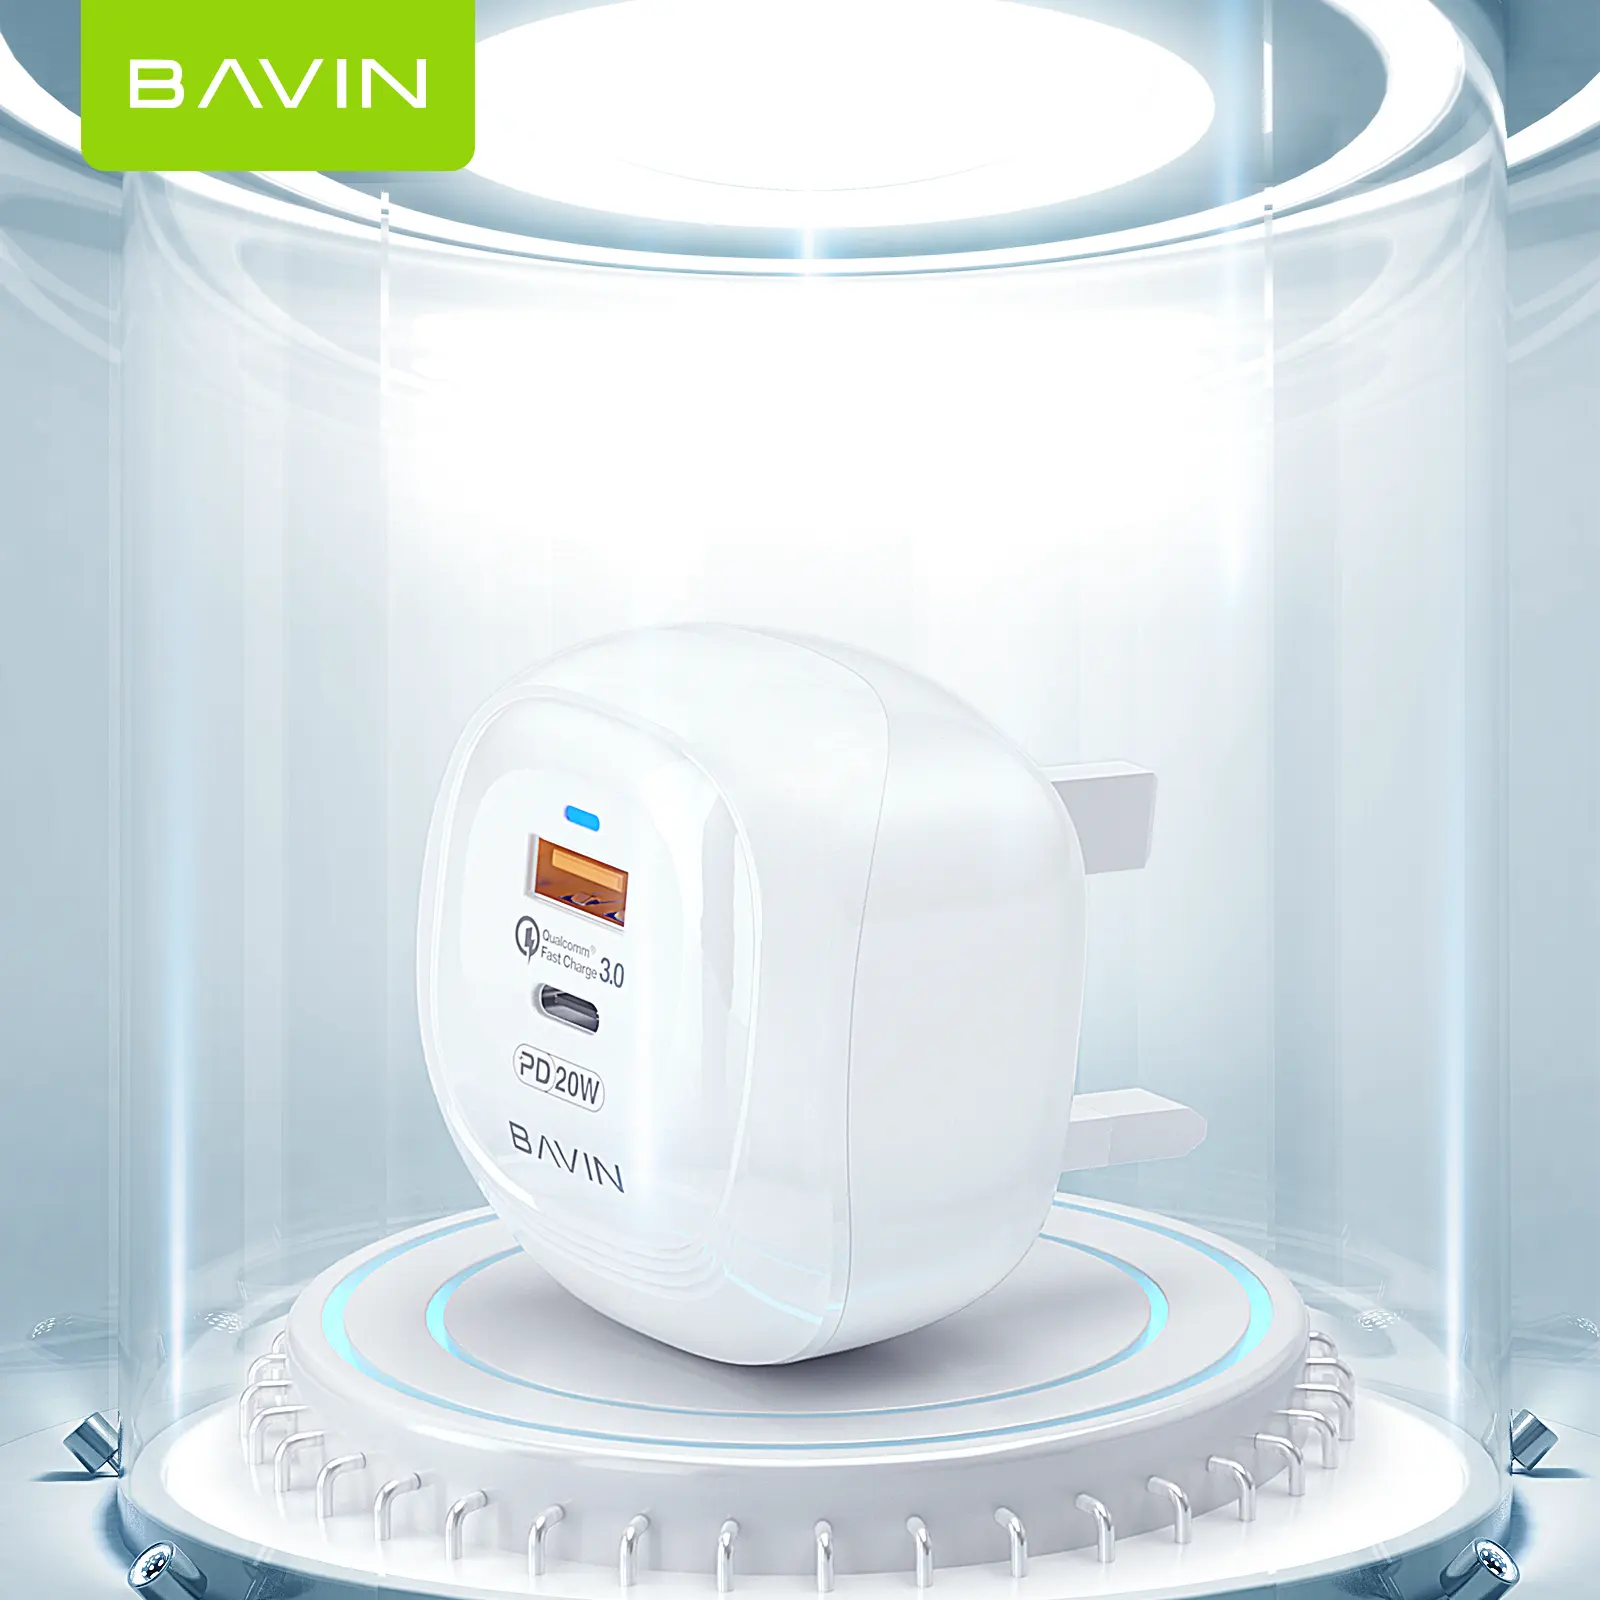 Havin – chargeur de téléphone Portable à prise personnalisée, PD 20W, Charge rapide, 2 en 1, USB type-c, adaptateur mural pour ordinateur Portable, PC809E, nouveaux produits